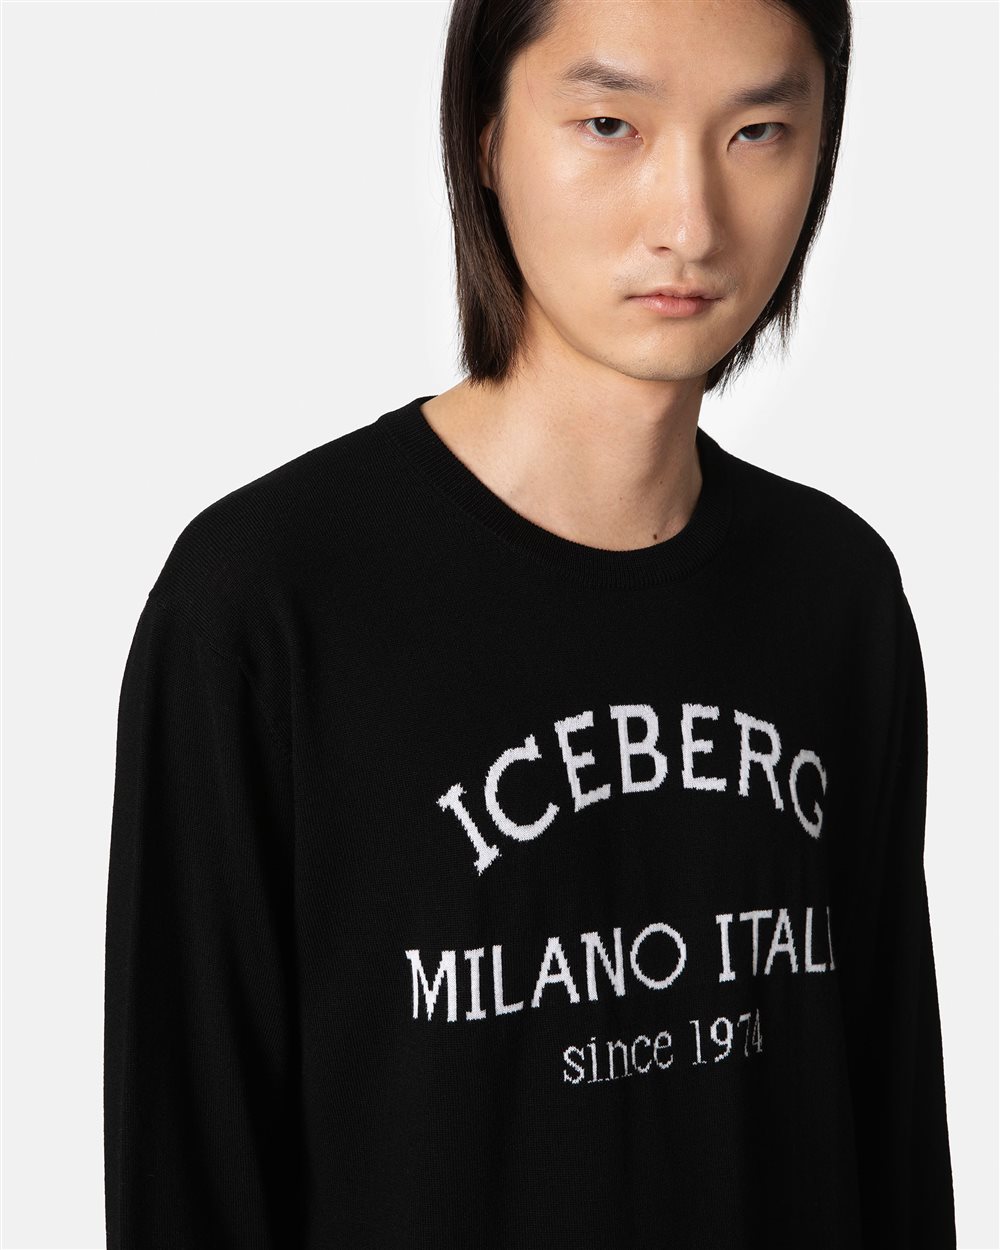 Black jumper with heritage logo - Iceberg - Official Website